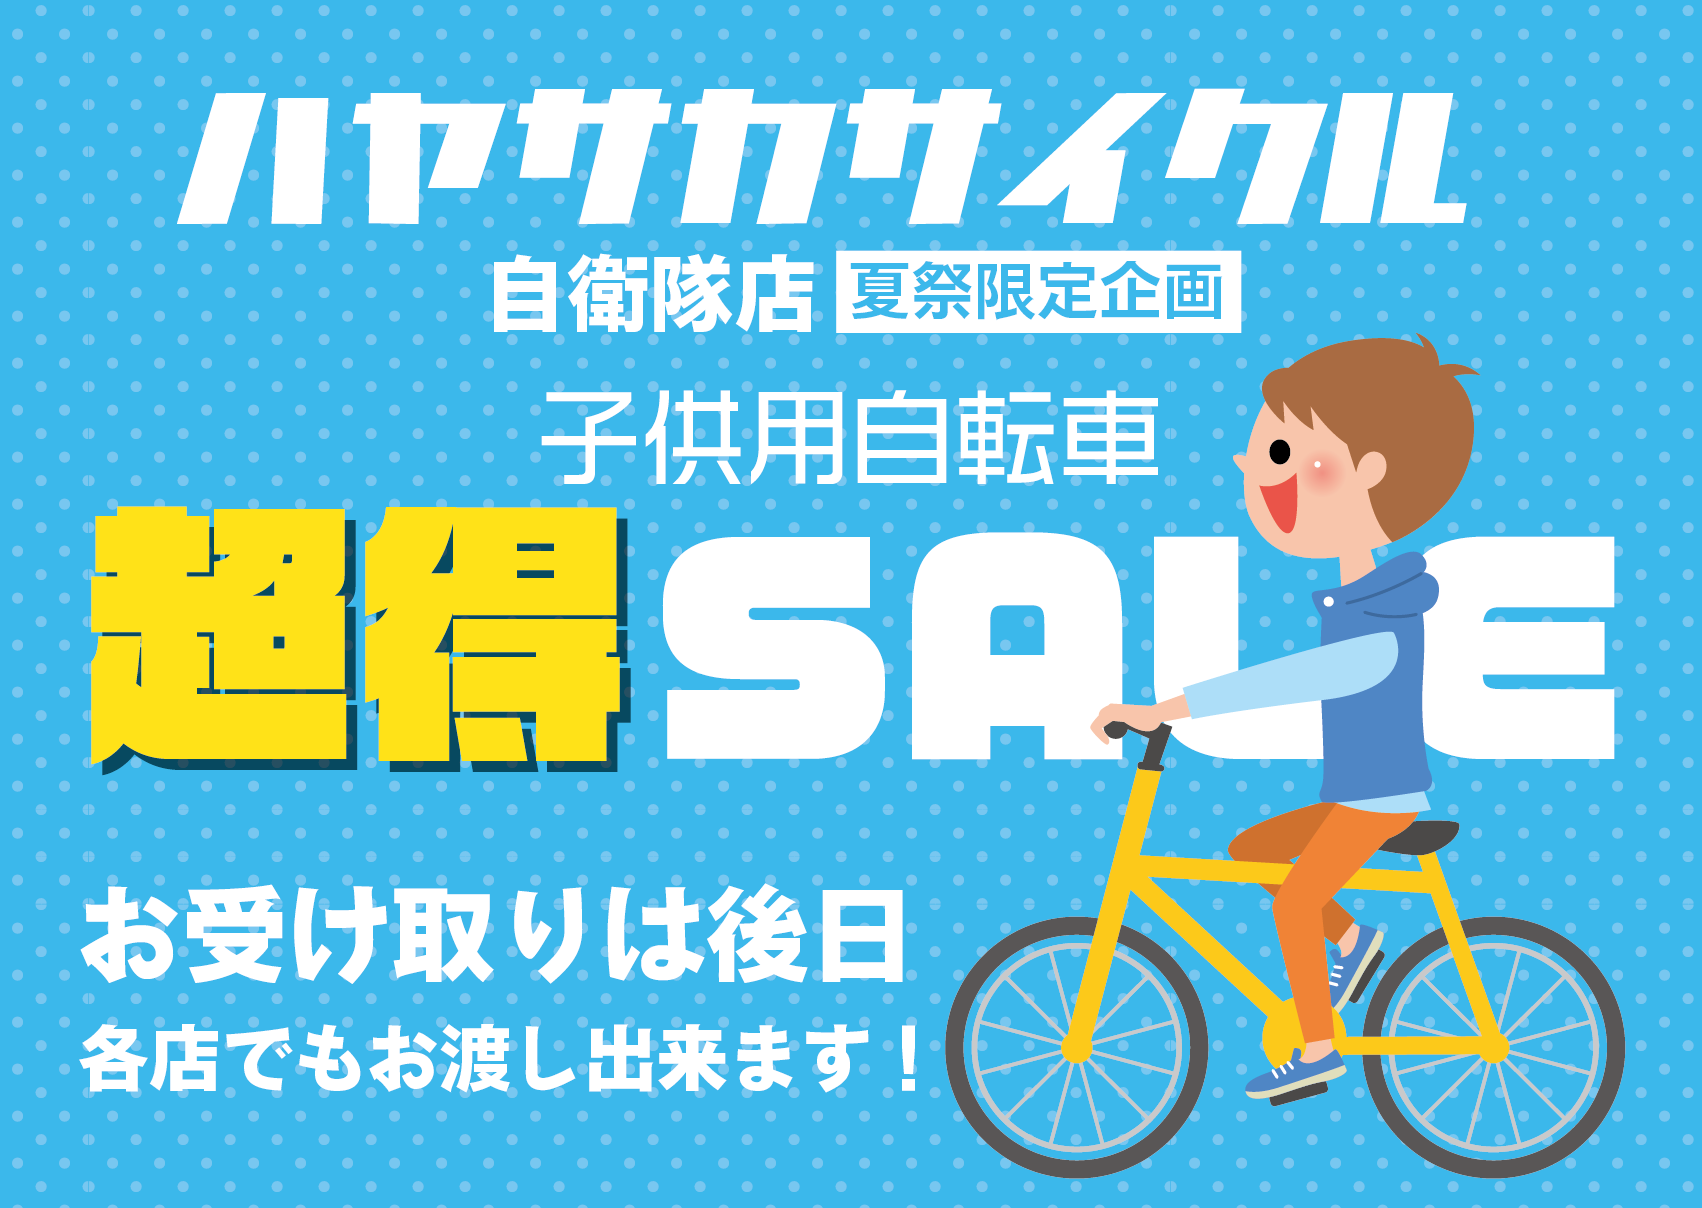 続報 仙台駐屯地夏祭り中古子供用自転車セール情報 バイク 自転車の購入修理ならハヤサカサイクル